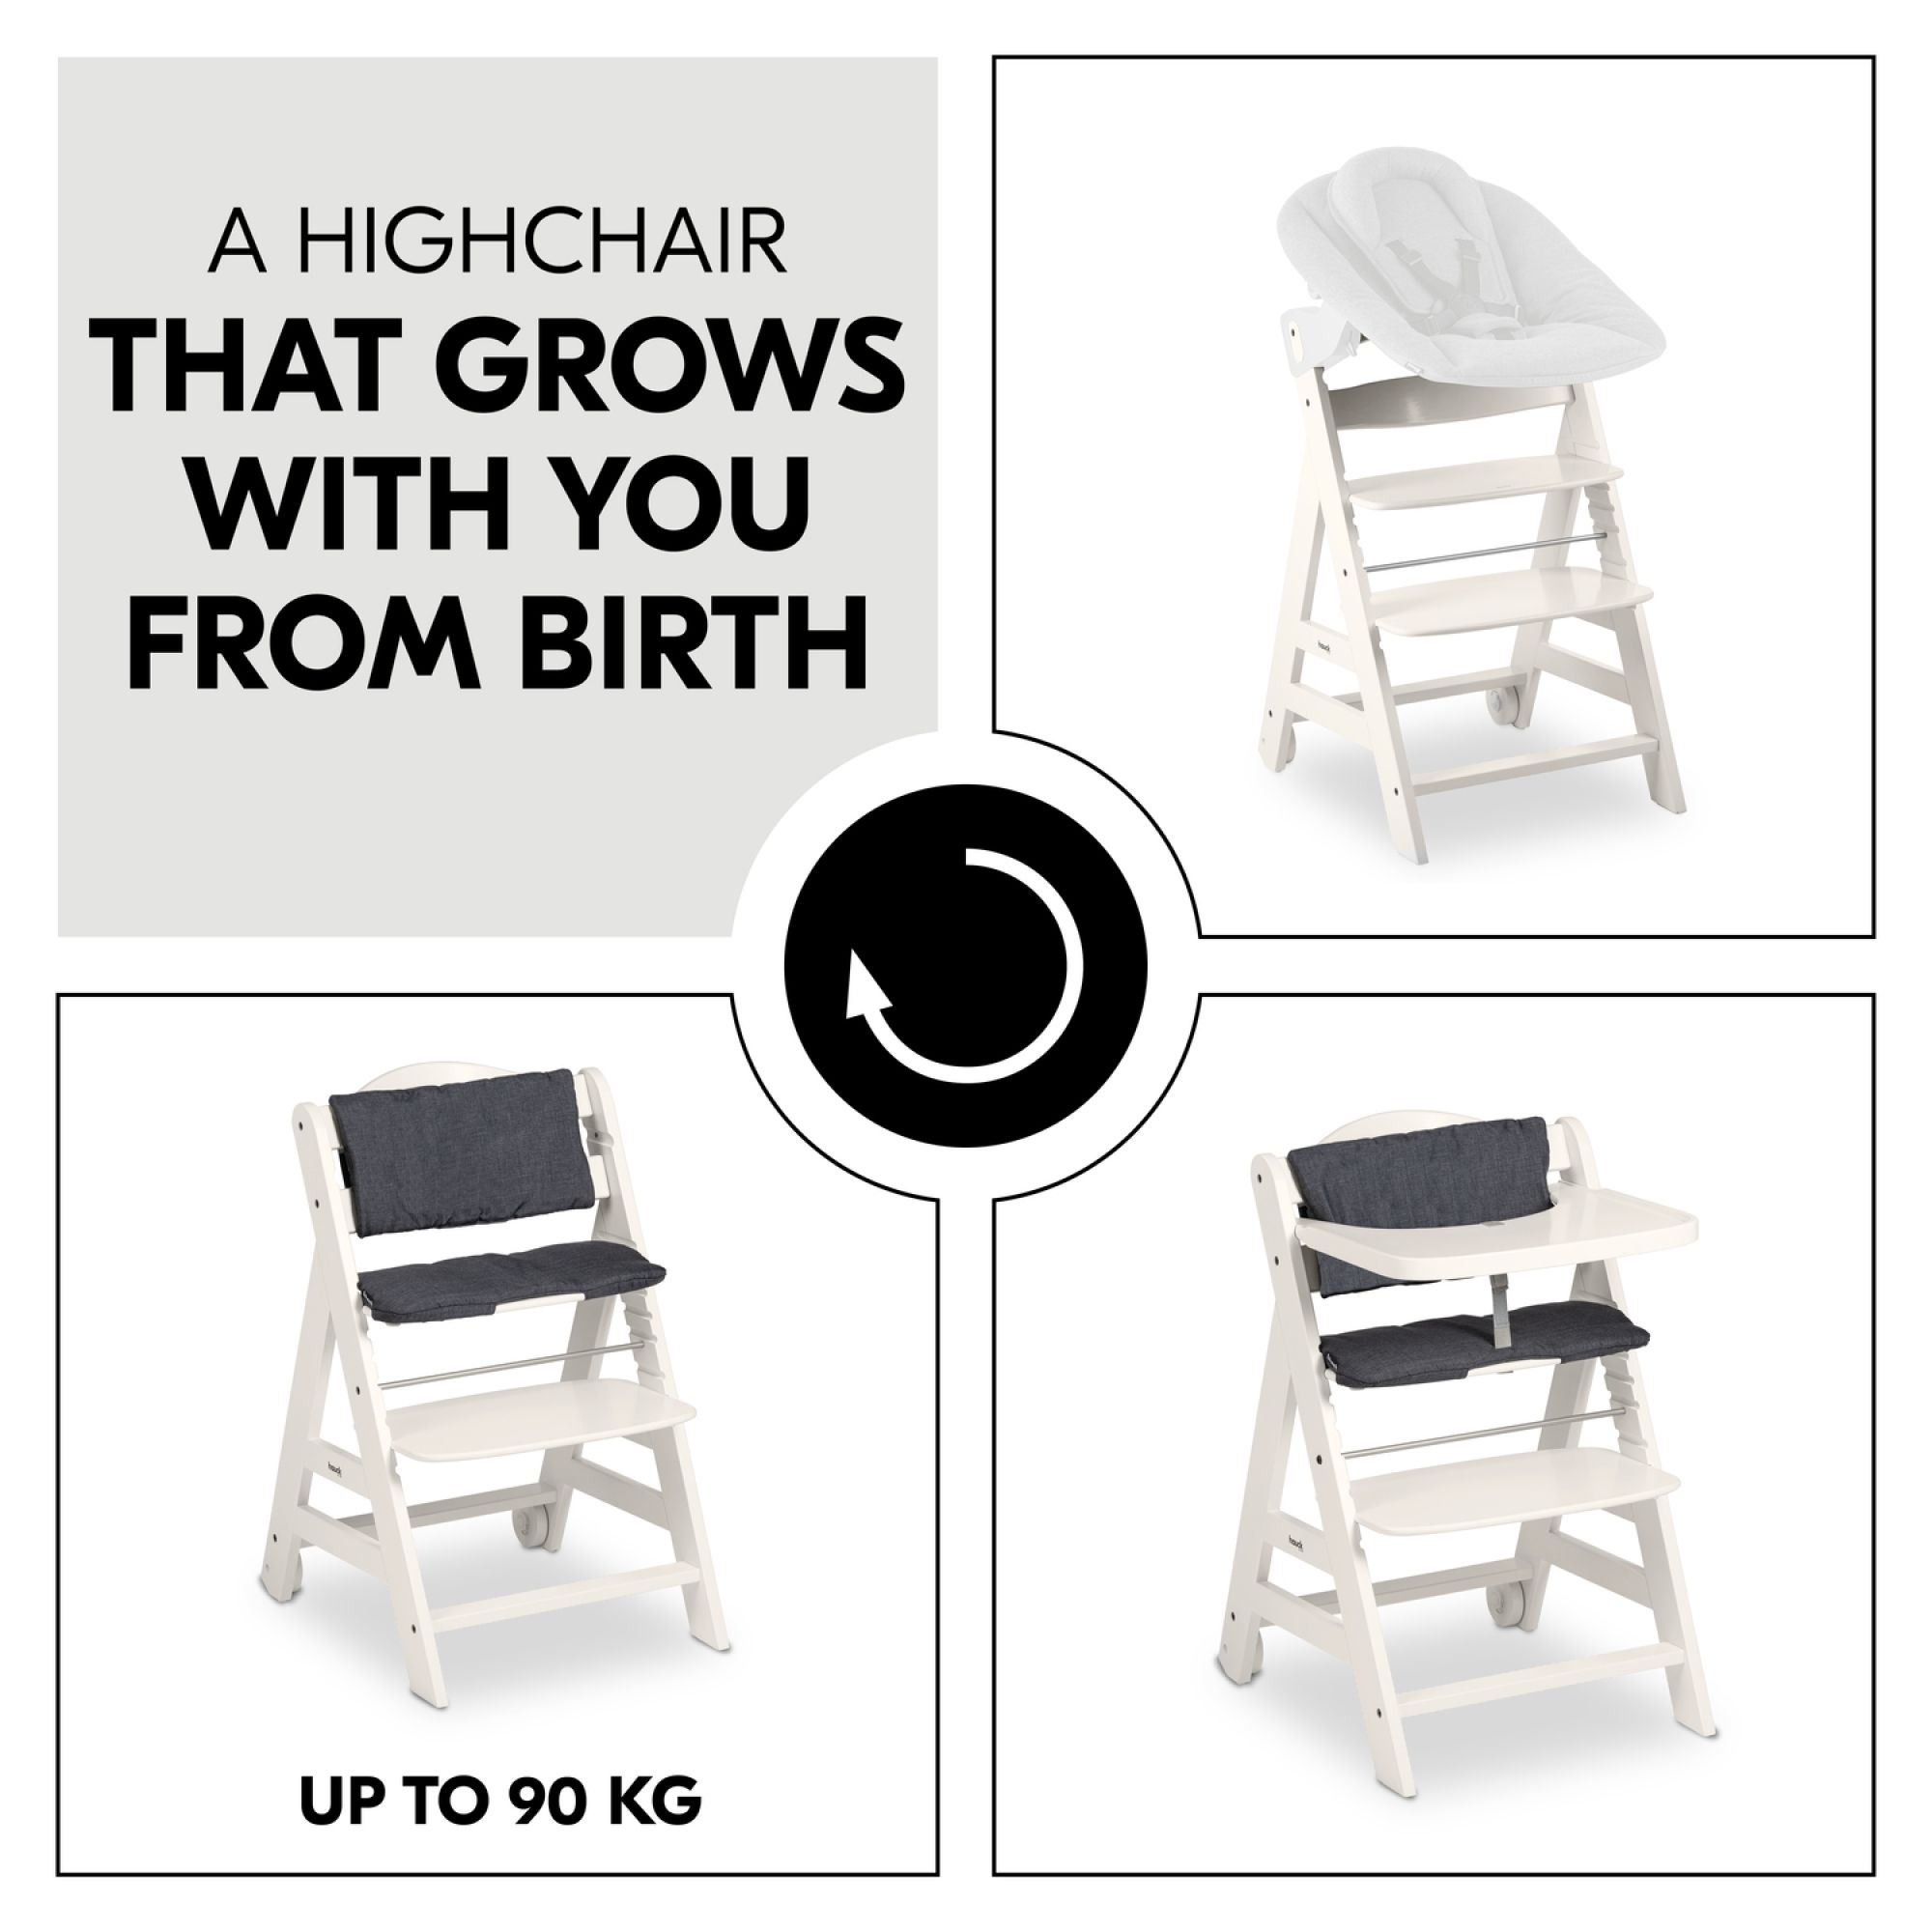 Hauck - Chaise Haute en Bois pour bébé Évolutive Alpha + / White